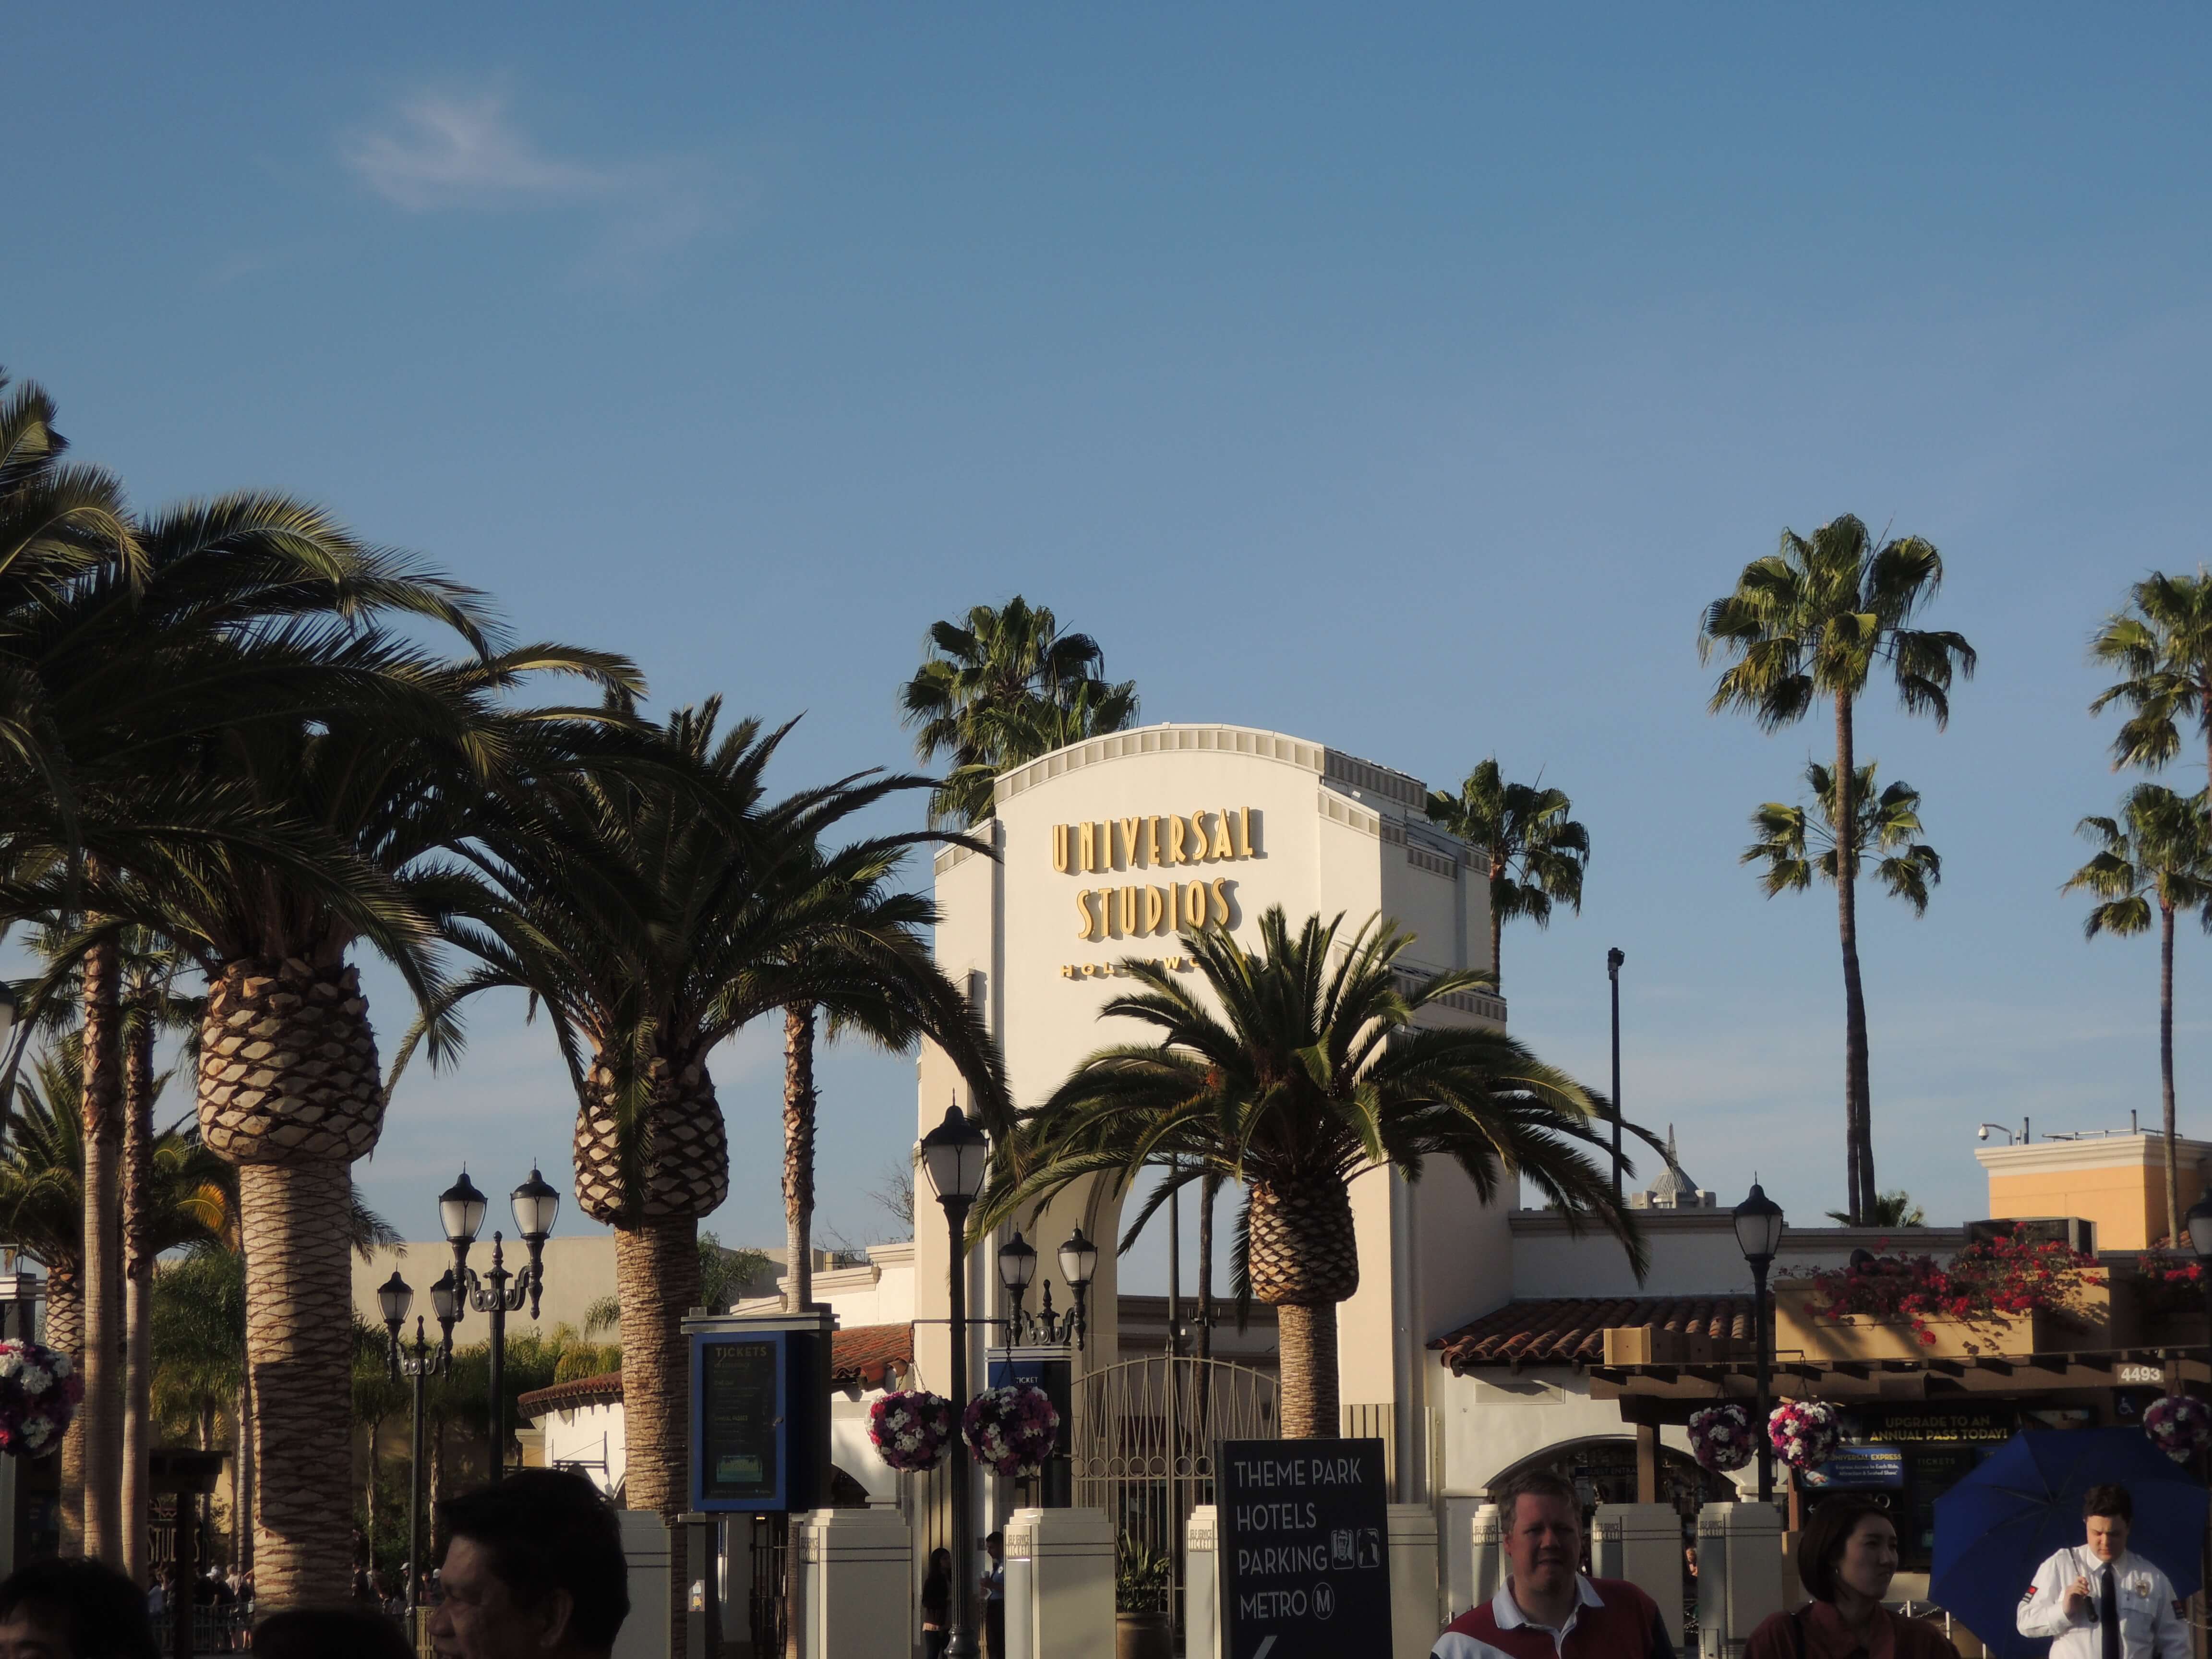 🌴Une journée à Universal Studios d'Hollywood ! Sur Goodie Mood, le blog Feel Good d'une française expatriée à Los Angeles. #universalstudios #hollywood #californie #expat #LosAngeles #Attraction #Parc #HarryPotter